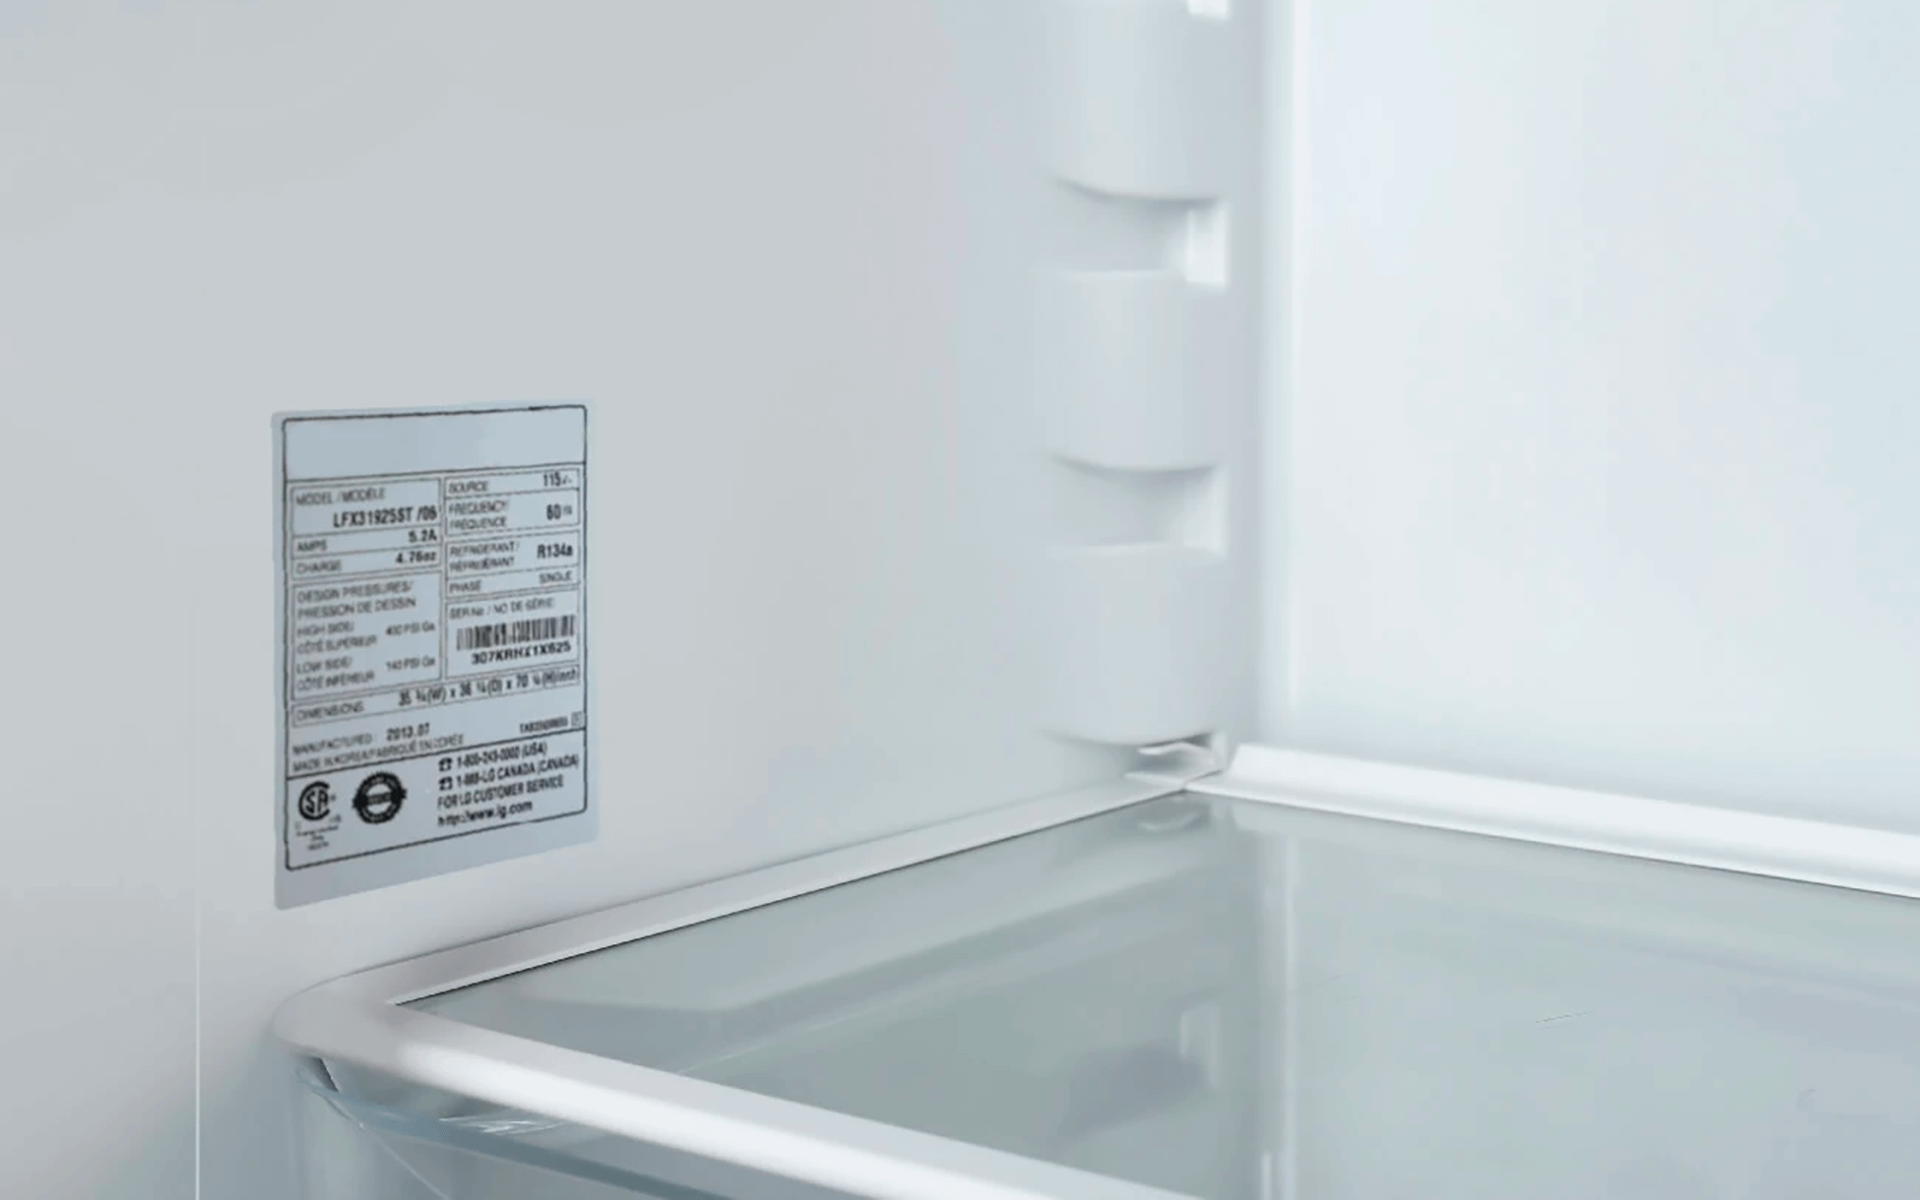 Serial number inside a fridge freezer